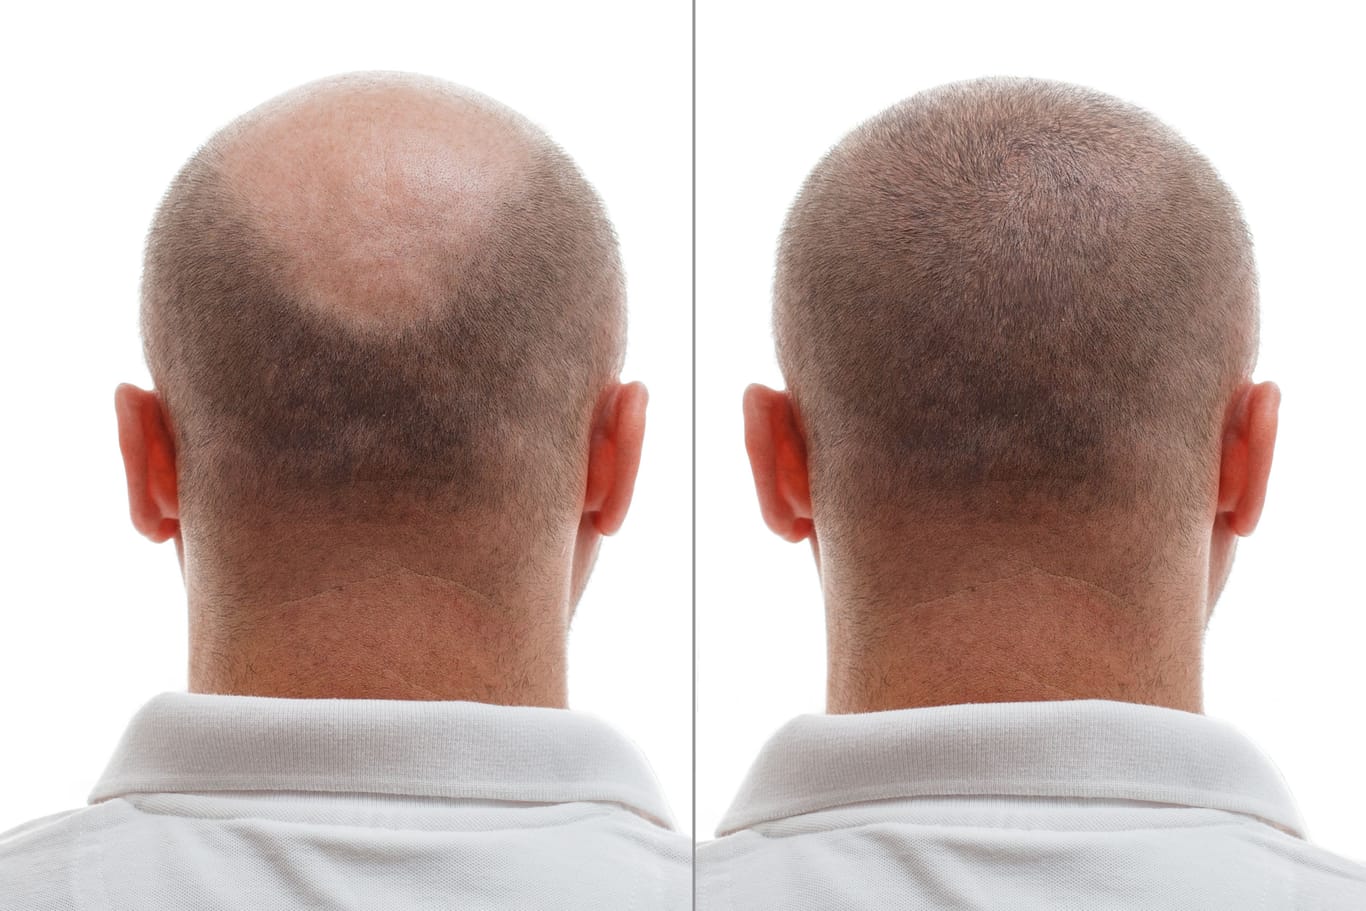 Vor und nach einer Haartransplantation. Immer mehr Männer mit starkem Haarausfall entscheiden sich für den Eingriff.